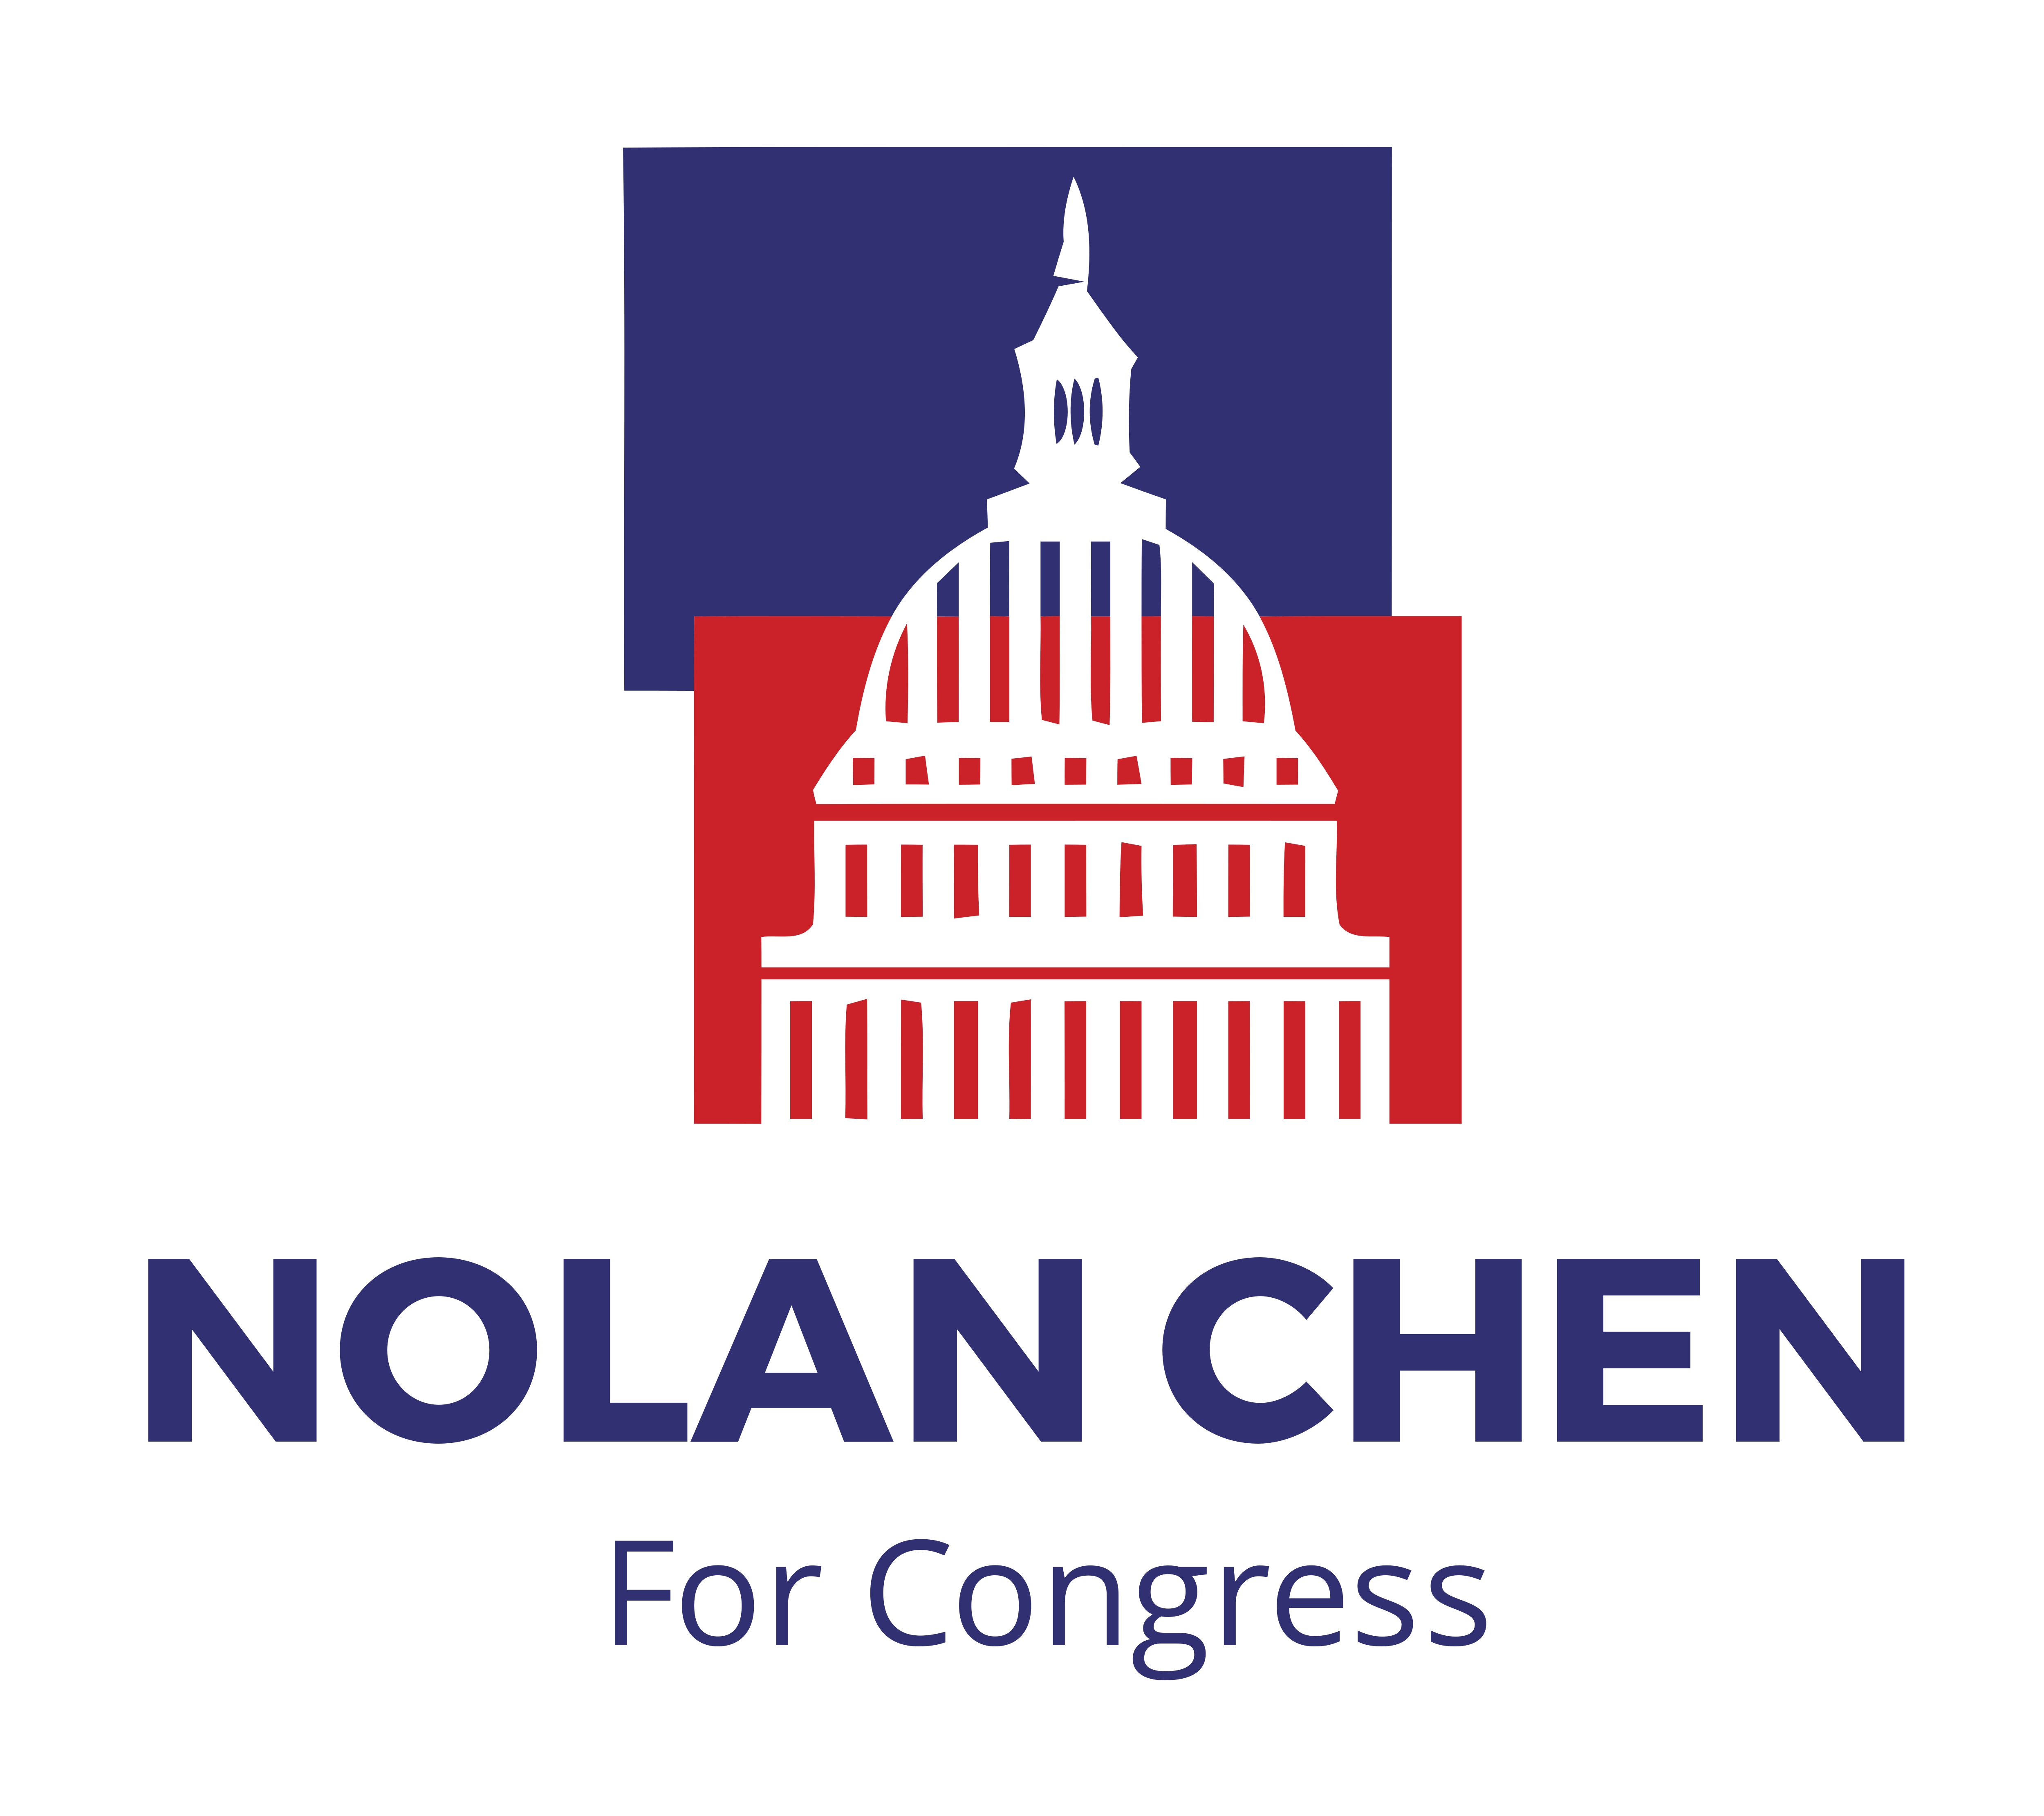 Nolan Chen for Congress